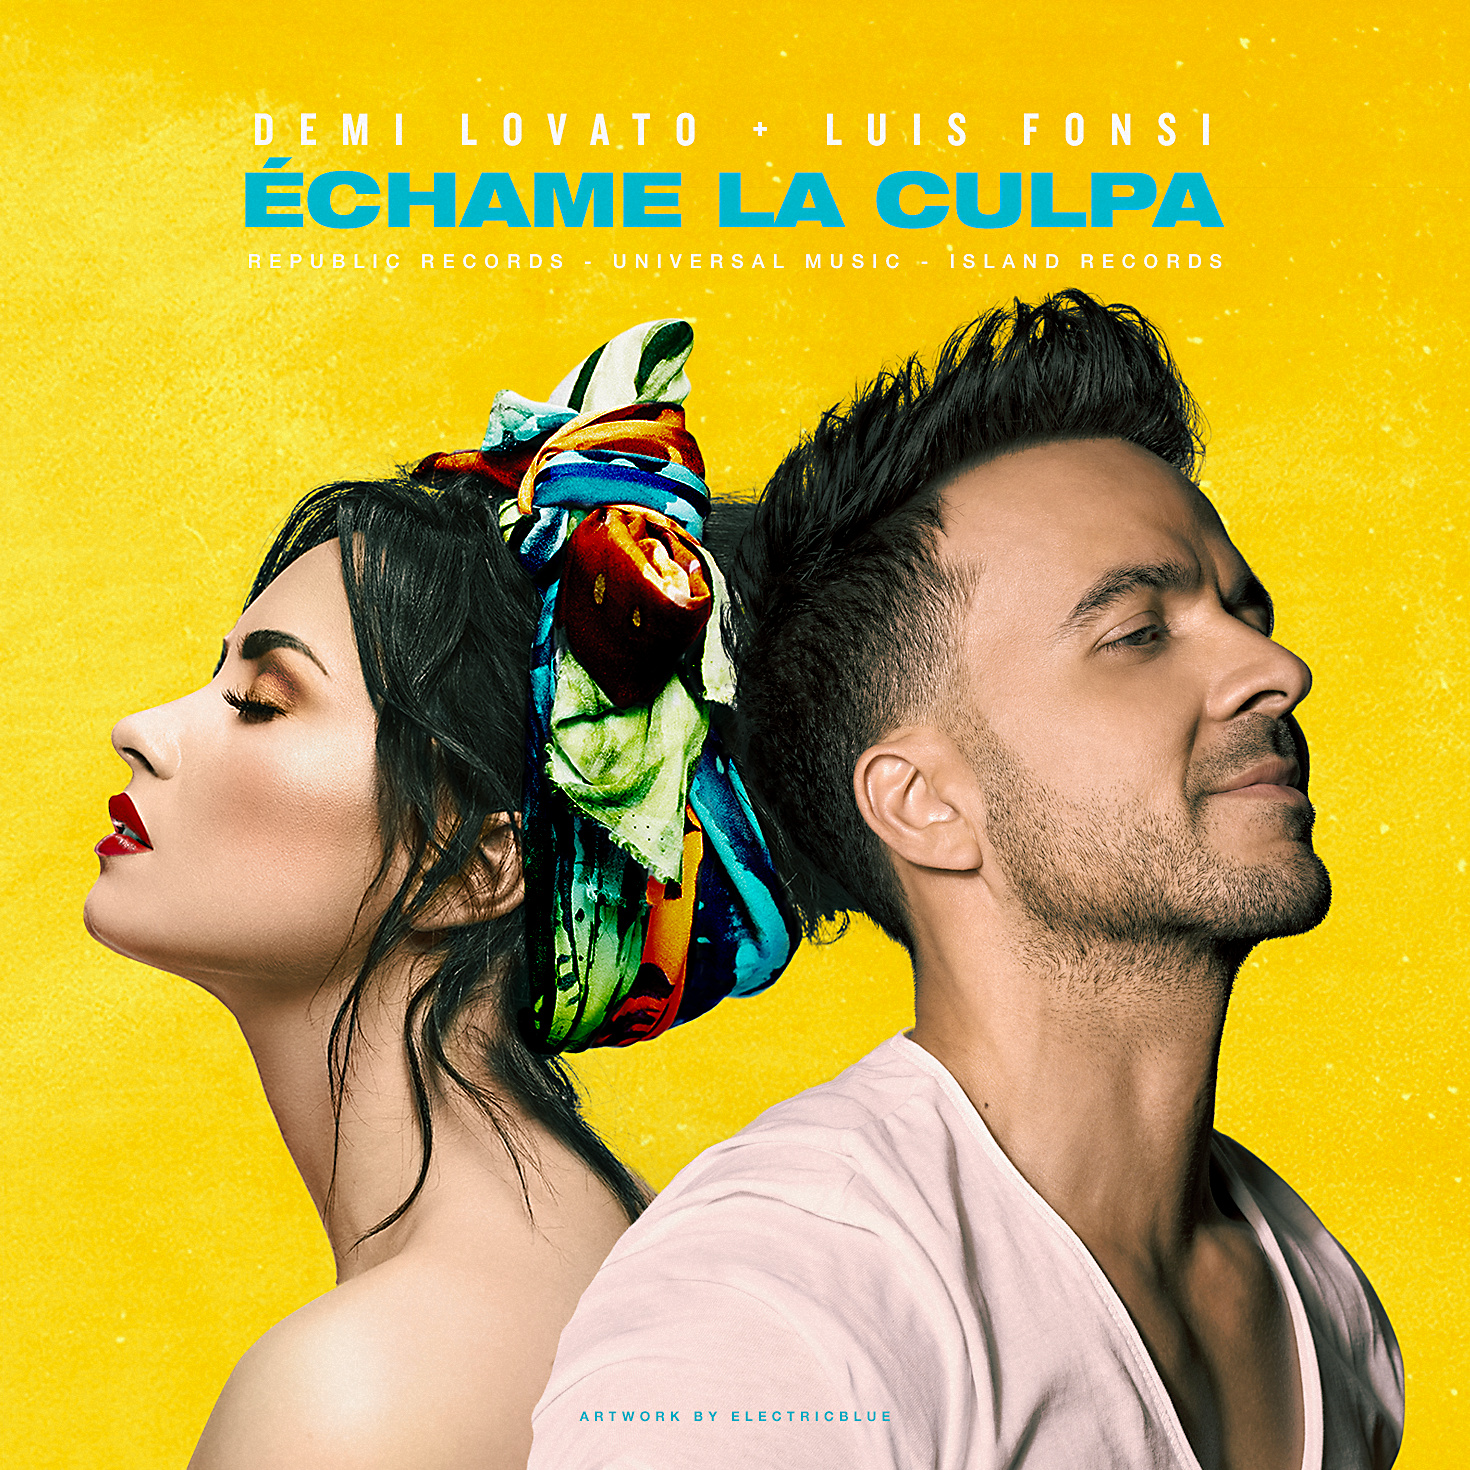 Demi Lovato & Luis Fonsi - Échame La Culpa (ARTWORK + COLORING) - Album  Artwork - Spill It Now